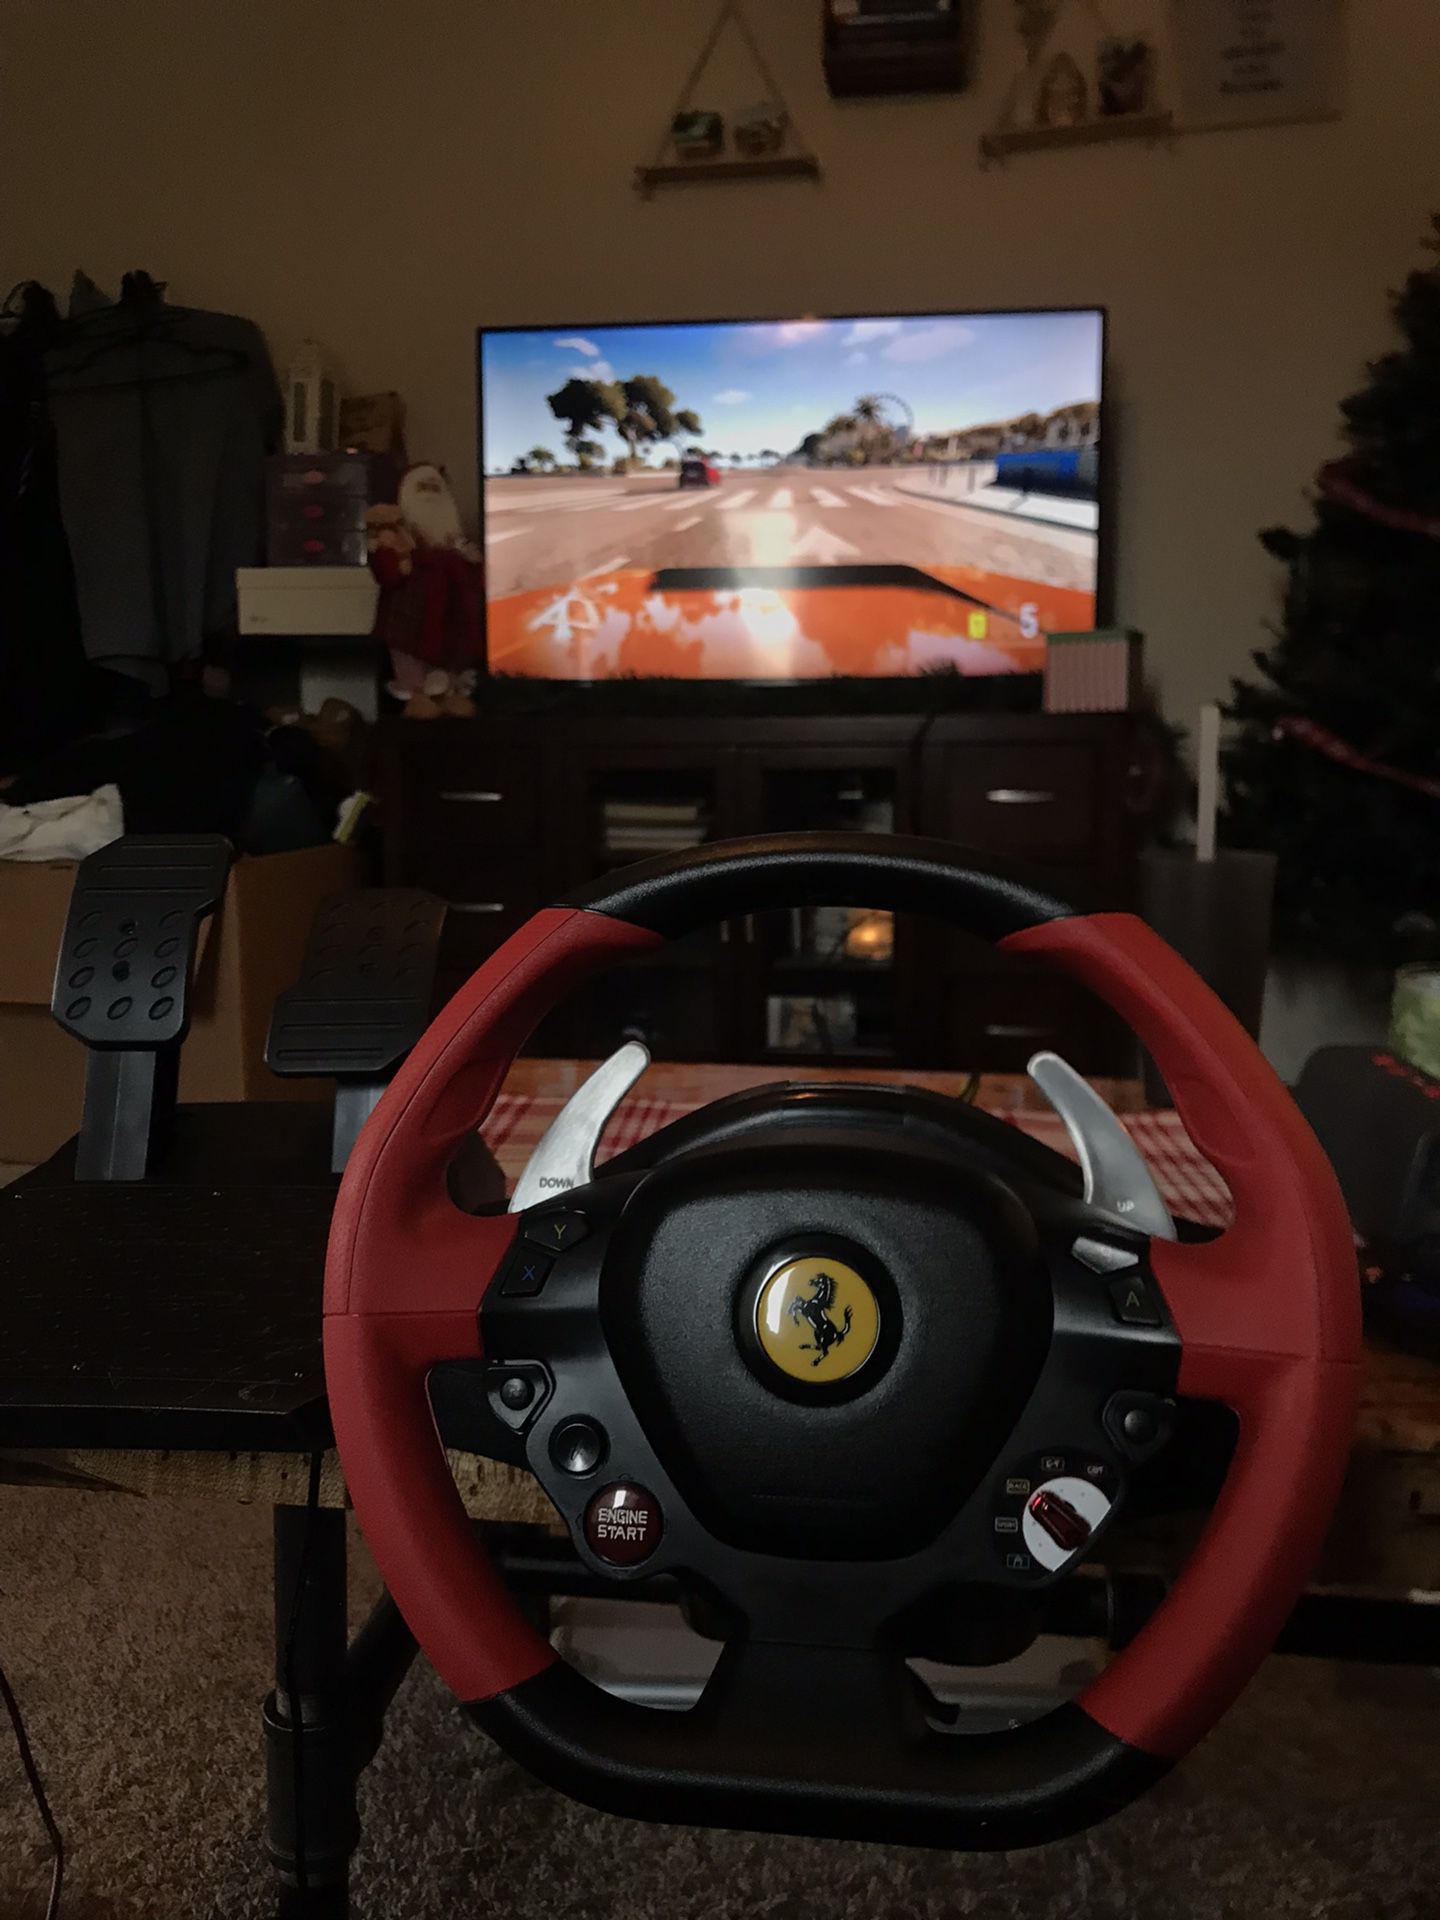 Thrustmaster Racing Wheel (Xbox One)